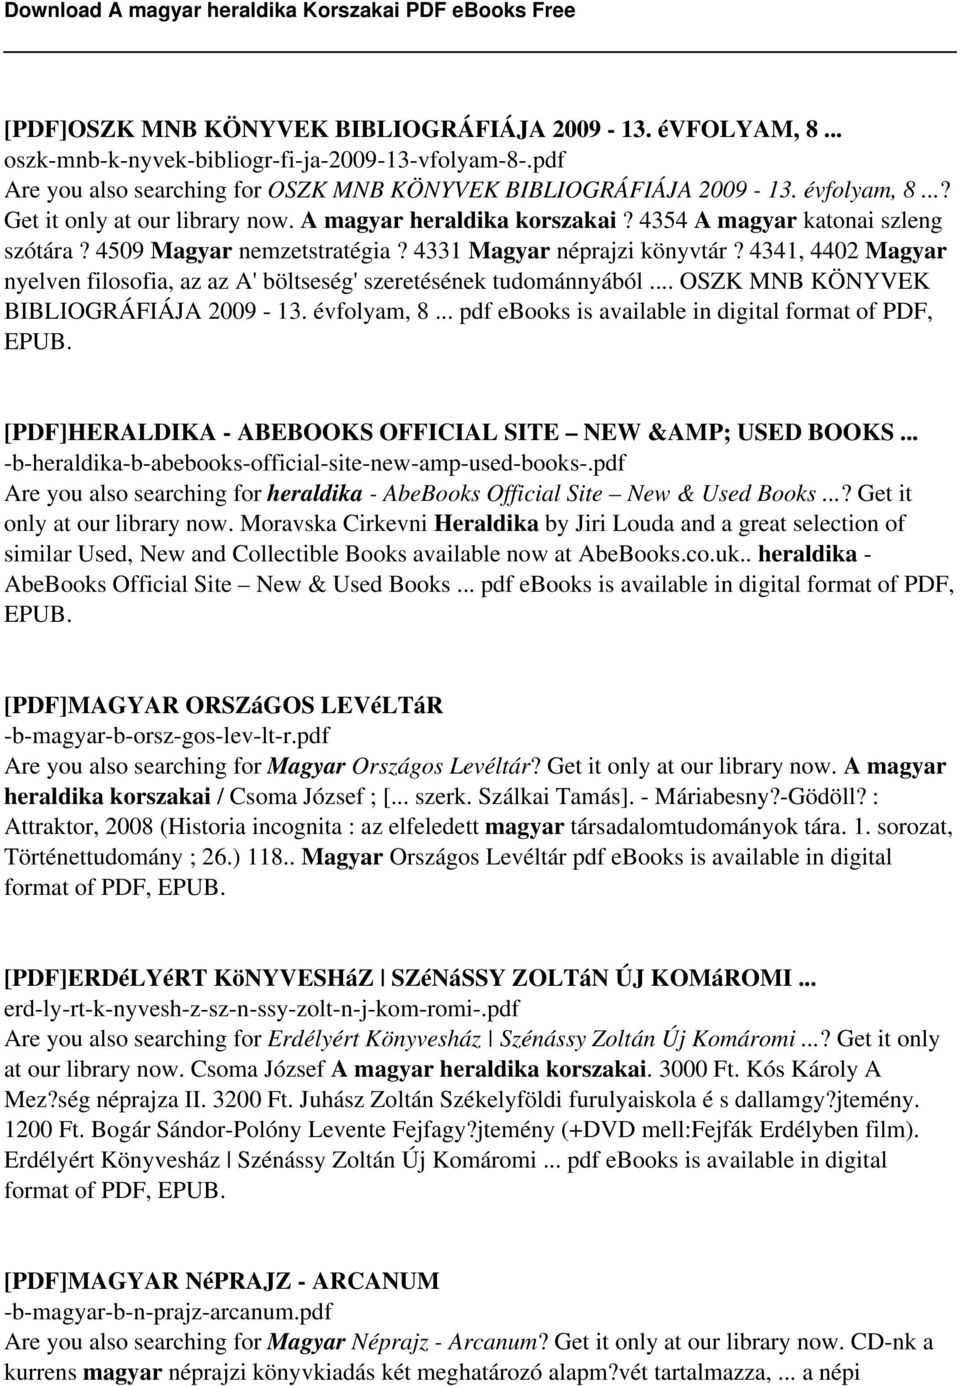 4341, 4402 Magyar nyelven filosofia, az az A' böltseség' szeretésének tudománnyából... OSZK MNB KÖNYVEK BIBLIOGRÁFIÁJA 2009-13. évfolyam, 8... pdf ebooks is available in digital format of PDF, EPUB.